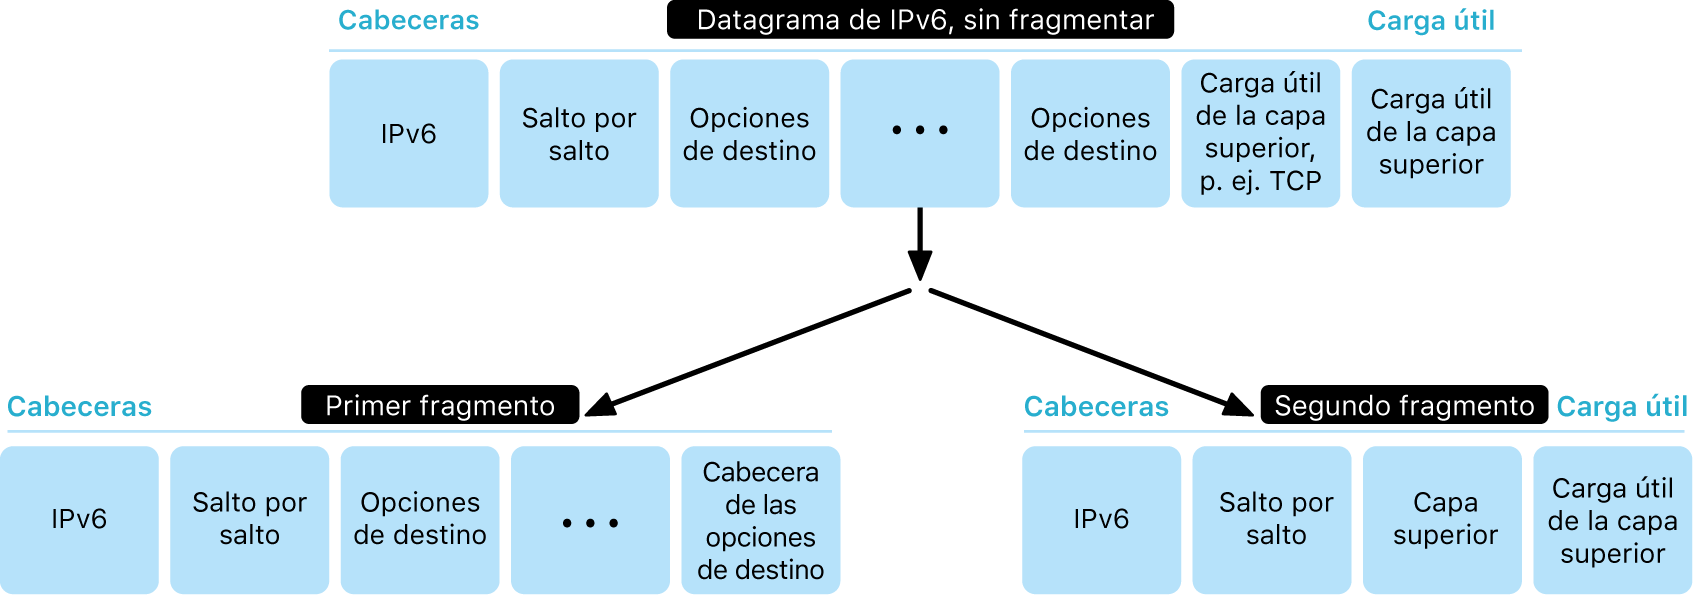 Diagrama que muestra un datagrama de IPv6 en dos capas: sin fragmentar y, por debajo, fragmentado.